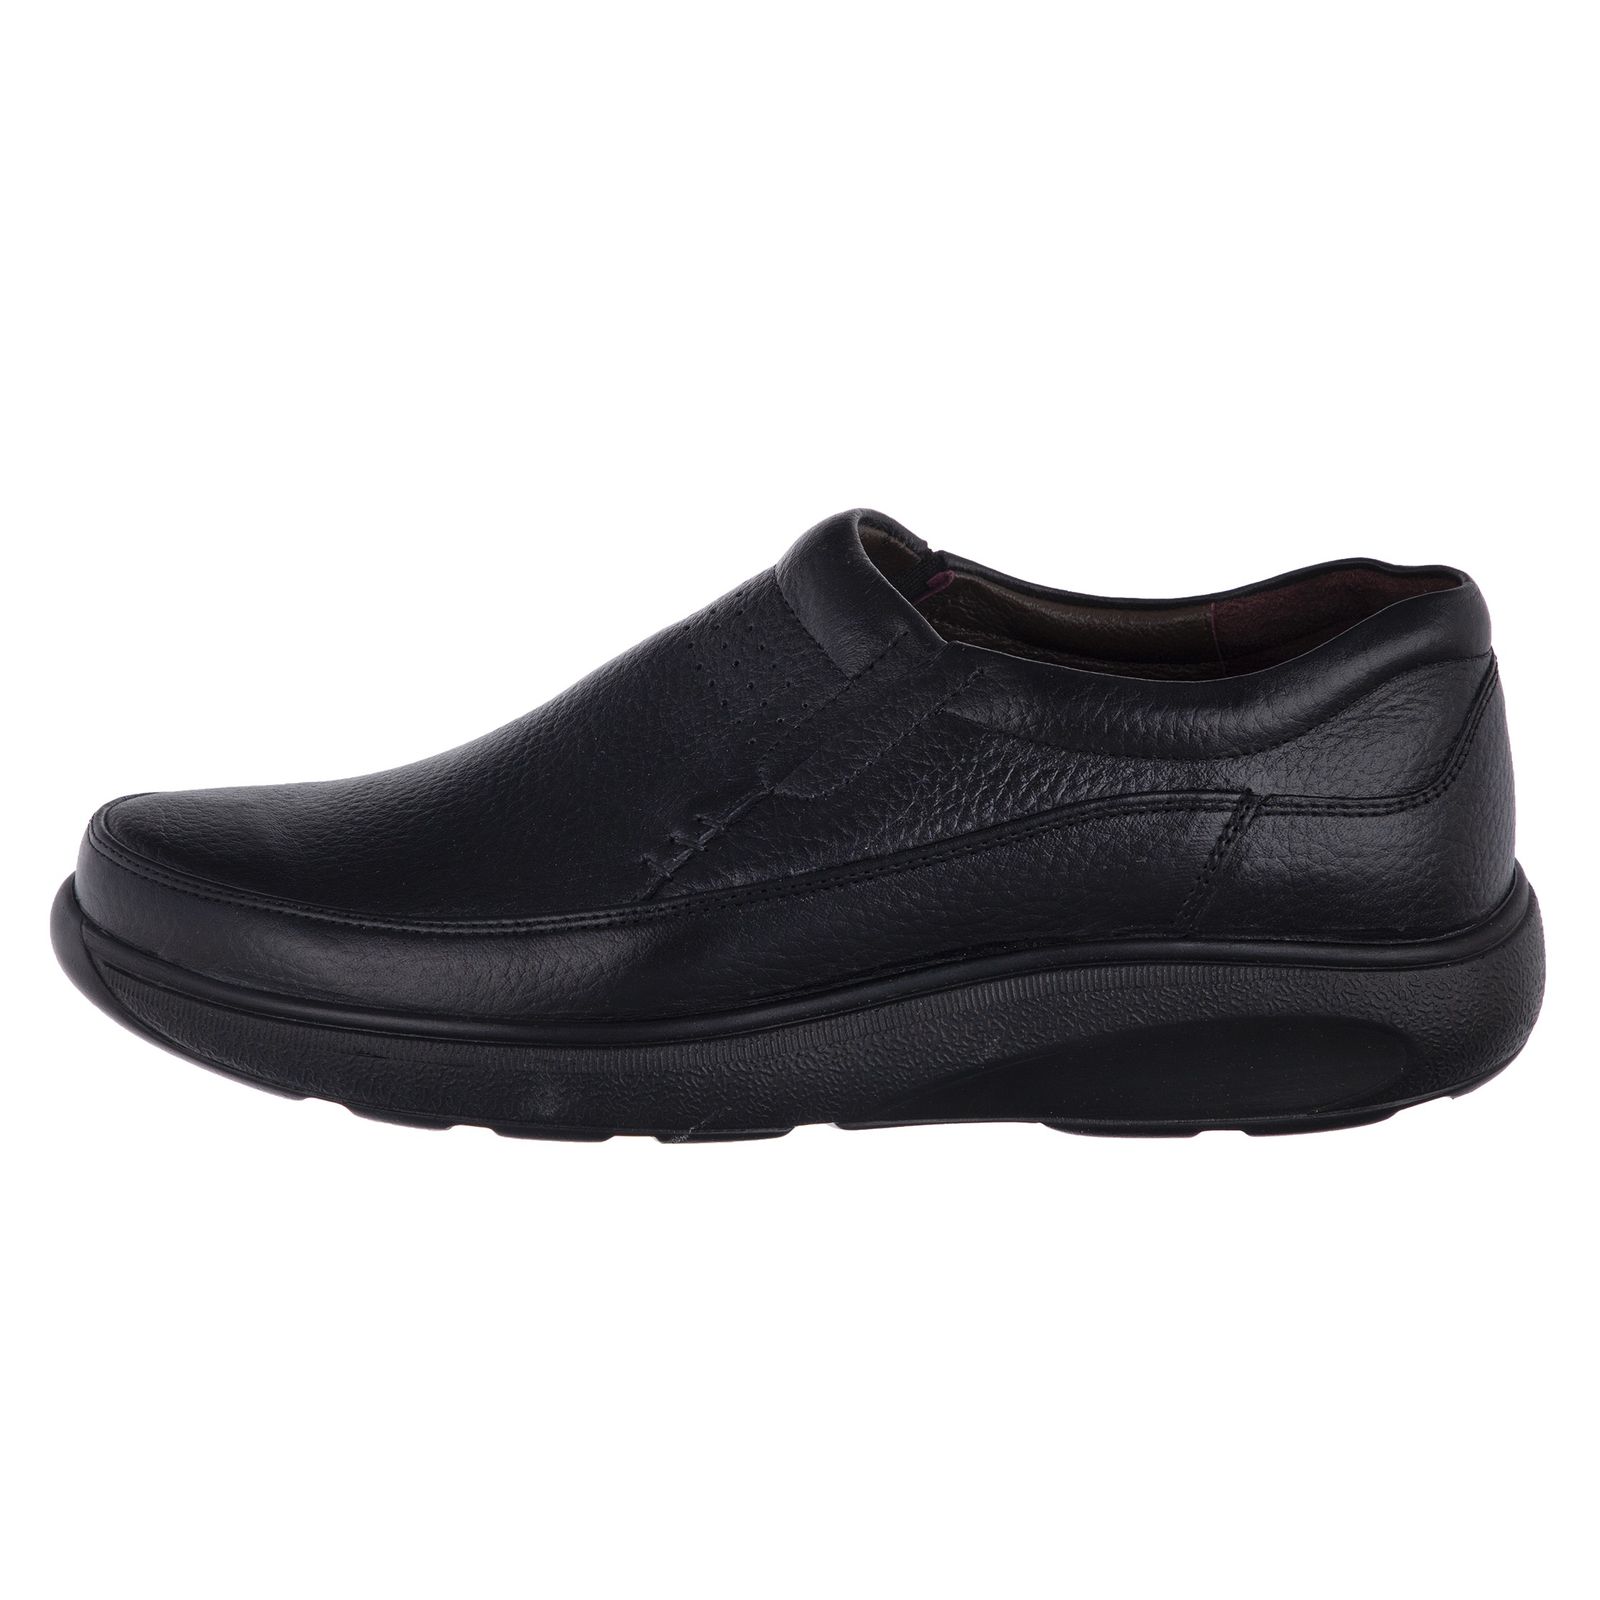 کفش روزمره مردانه دلفارد مدل چرم طبیعی کد D503101 -  - 1